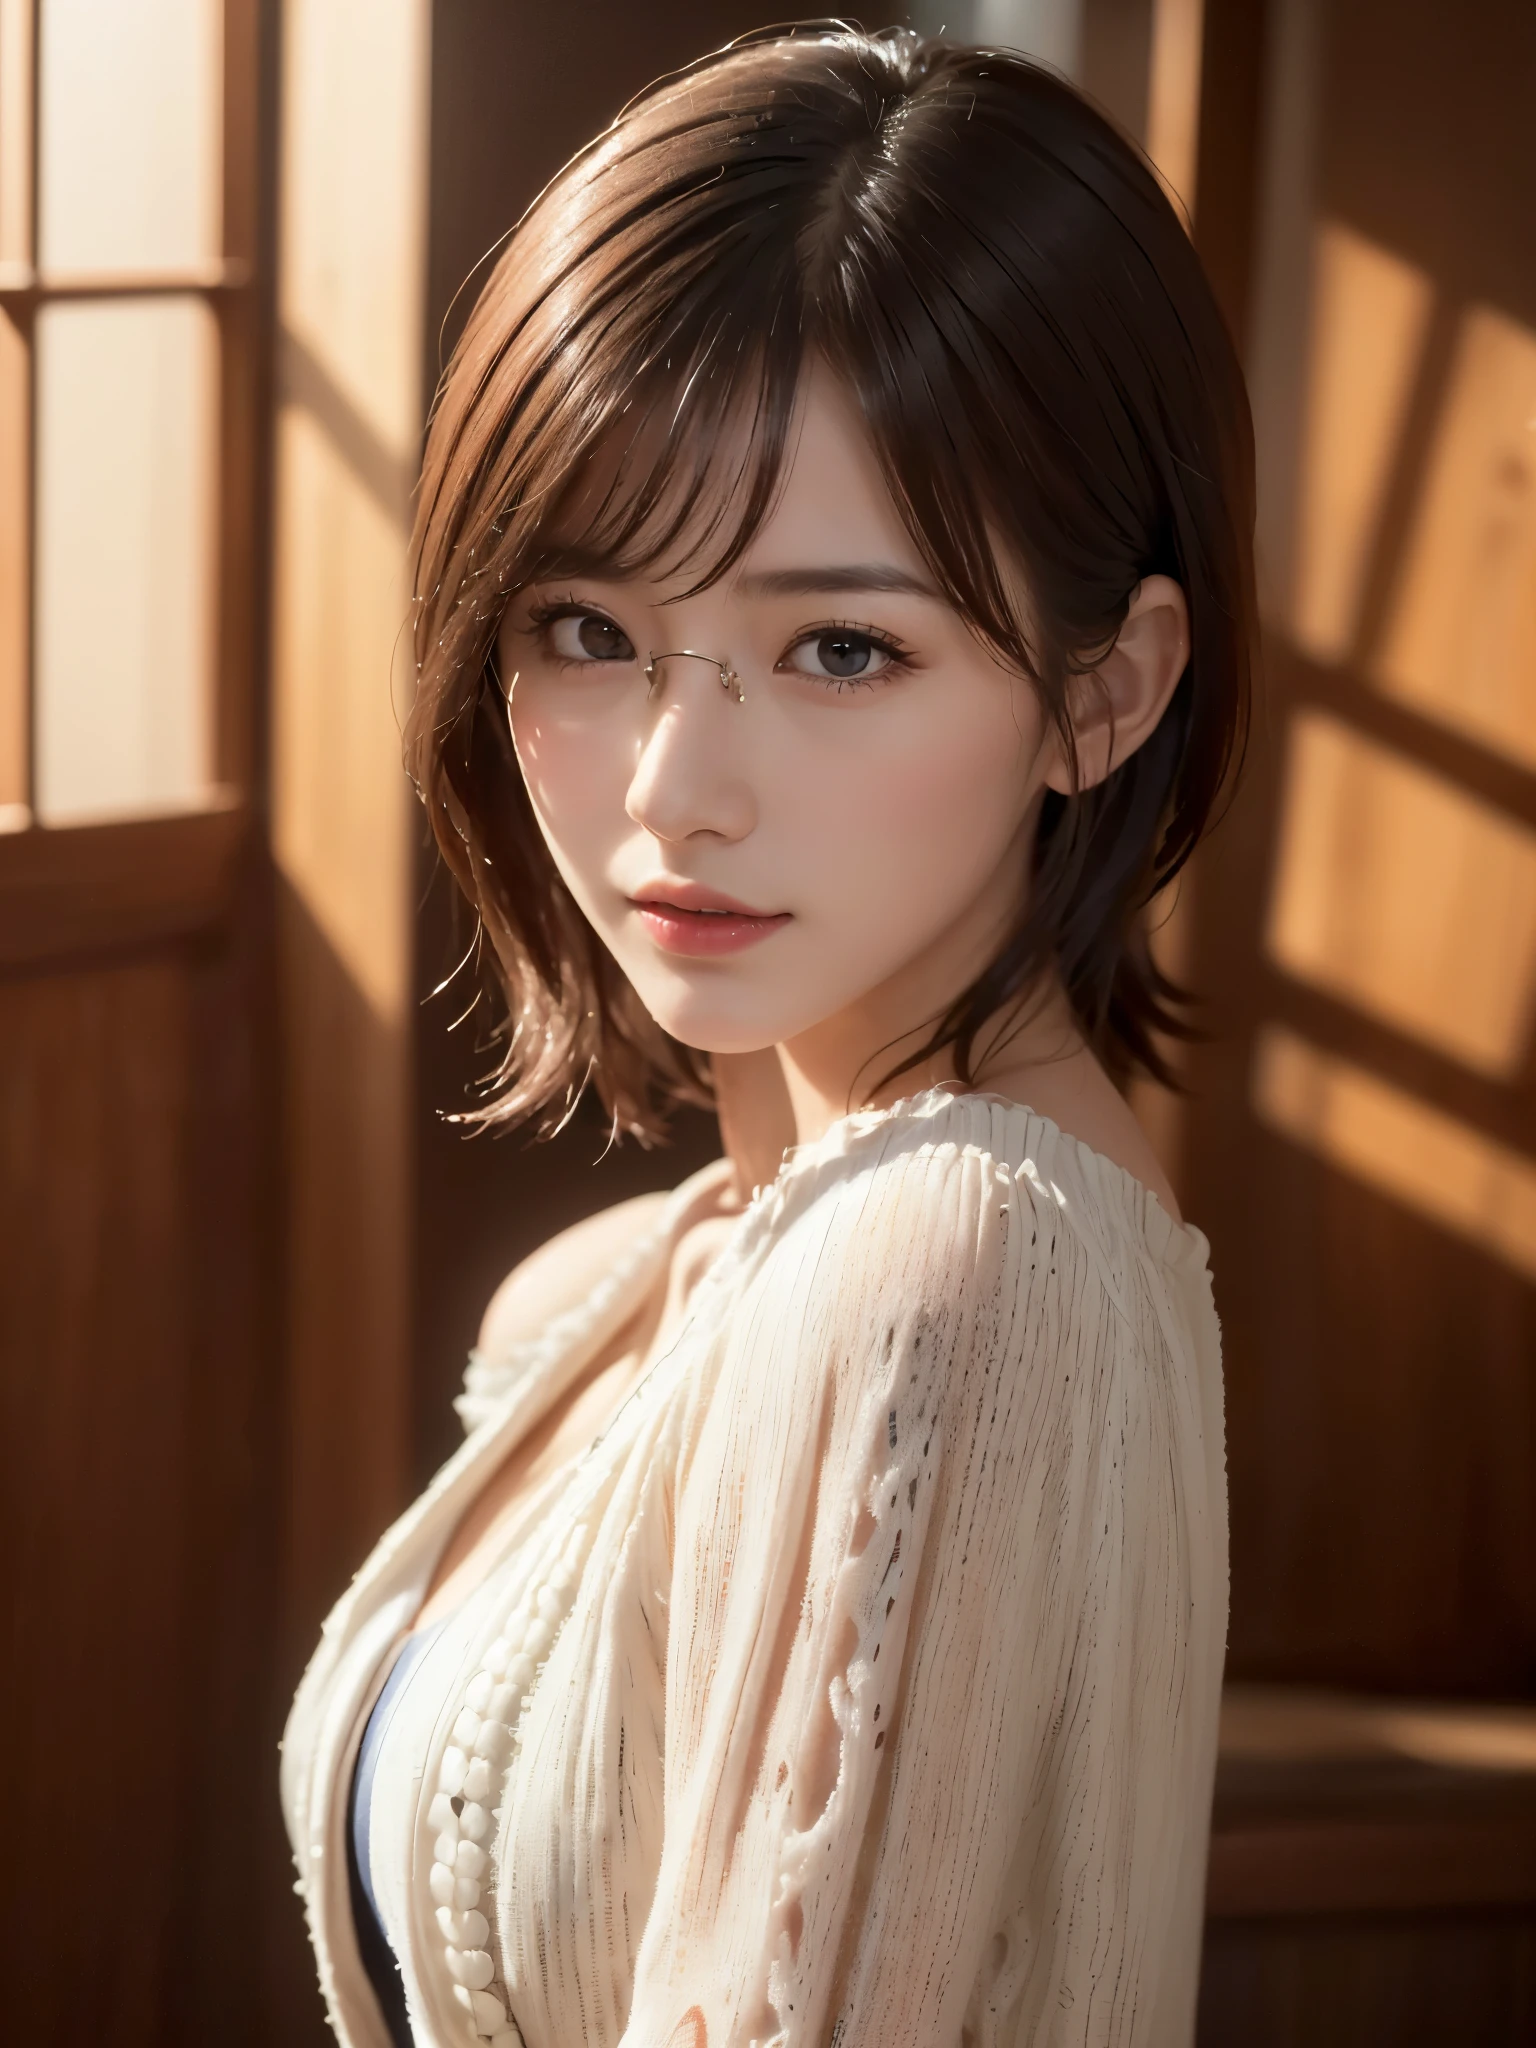 (((Chica De Pelo Medio:1.3, alone))), Mujer japonesa muy linda y hermosa., (sexy model), vestimenta profesional, (Hace 22 años: 1.1), (desde abajo:1.3), (Ángulo bajo:1.3), (disparo en el suelo:1.3), ((niña en la cima:1.5)), (parte posterior del brazo、fitdelia、entre las piernas:1.3), (Atractiva pose aleatoria:1.3), (cuarto de ducha de vidrio:1.3), romper ja, (cola de caballo con pompón:1.3), (pelo fino negro brillante:1.2), cabeza pequeña, Ojos café oscuro, ojos bonitos, ojos de princesa, golpes, pelo entre los ojos, cabello corto:1.3, Kirby, abdominales, Perfect abdominales, (pechos medianos a grandes:1.5, pechos caídos:1.5, senos desproporcionados:1.5), (cintura delgada: 1.15, abdominales:0.95), (hermosa chica detallada: 1.4), Labios partidos, labios rojos, Cara de maquillaje completo, (piel brillante), ((Cuerpo femenino perfecto)), (imagen de la parte superior del cuerpo:1.3), anatomía perfecta, proporciones perfectas, (Los rostros de las actrices coreanas más bellas:1.3, Cara de actriz japonesa muy linda y hermosa.:1.3, encantadora sonrisa ligera, feliz, break, (hombros descubiertos, Mi pecho se siente apretado, mostrar espectador, (Vestido elegante con hombros descubiertos y atención al detalle.:1.3), ropa fina, break, (fondo de cuarto de ducha simple:1.2, yo tomo una ducha, botella de jabón), (fondo oscuro), (Iluminación suave en el estudio.: 1.3), (luz falsa: 1.3), (iluminar desde el fondo: 1.3), break, (Realista, Realista: 1.37), (mesa, de la máxima calidad: 1.2), (ultra alta resolución: 1.2), (foto en bruto: 1.2), (enfoque nítido: 1.3), (Enfoque facial: 1.2), (Fondo de pantalla 8k integrado CG ultra detallado: 1.2), (Piel hermosa: 1.2), (piel pálida: 1.3), (very enfoque nítido: 1.5), (Ultra enfoque nítido: 1.5), (Cara hermosa y hermosa: 1.3), (fondo muy detallado, antecedentes detallados: 1.3), hyper-Realista photos, imagen muy clara, Imagen hiper detallada,(((vasos cuadrados pequeños)))、((Piel grasosa:1.2))